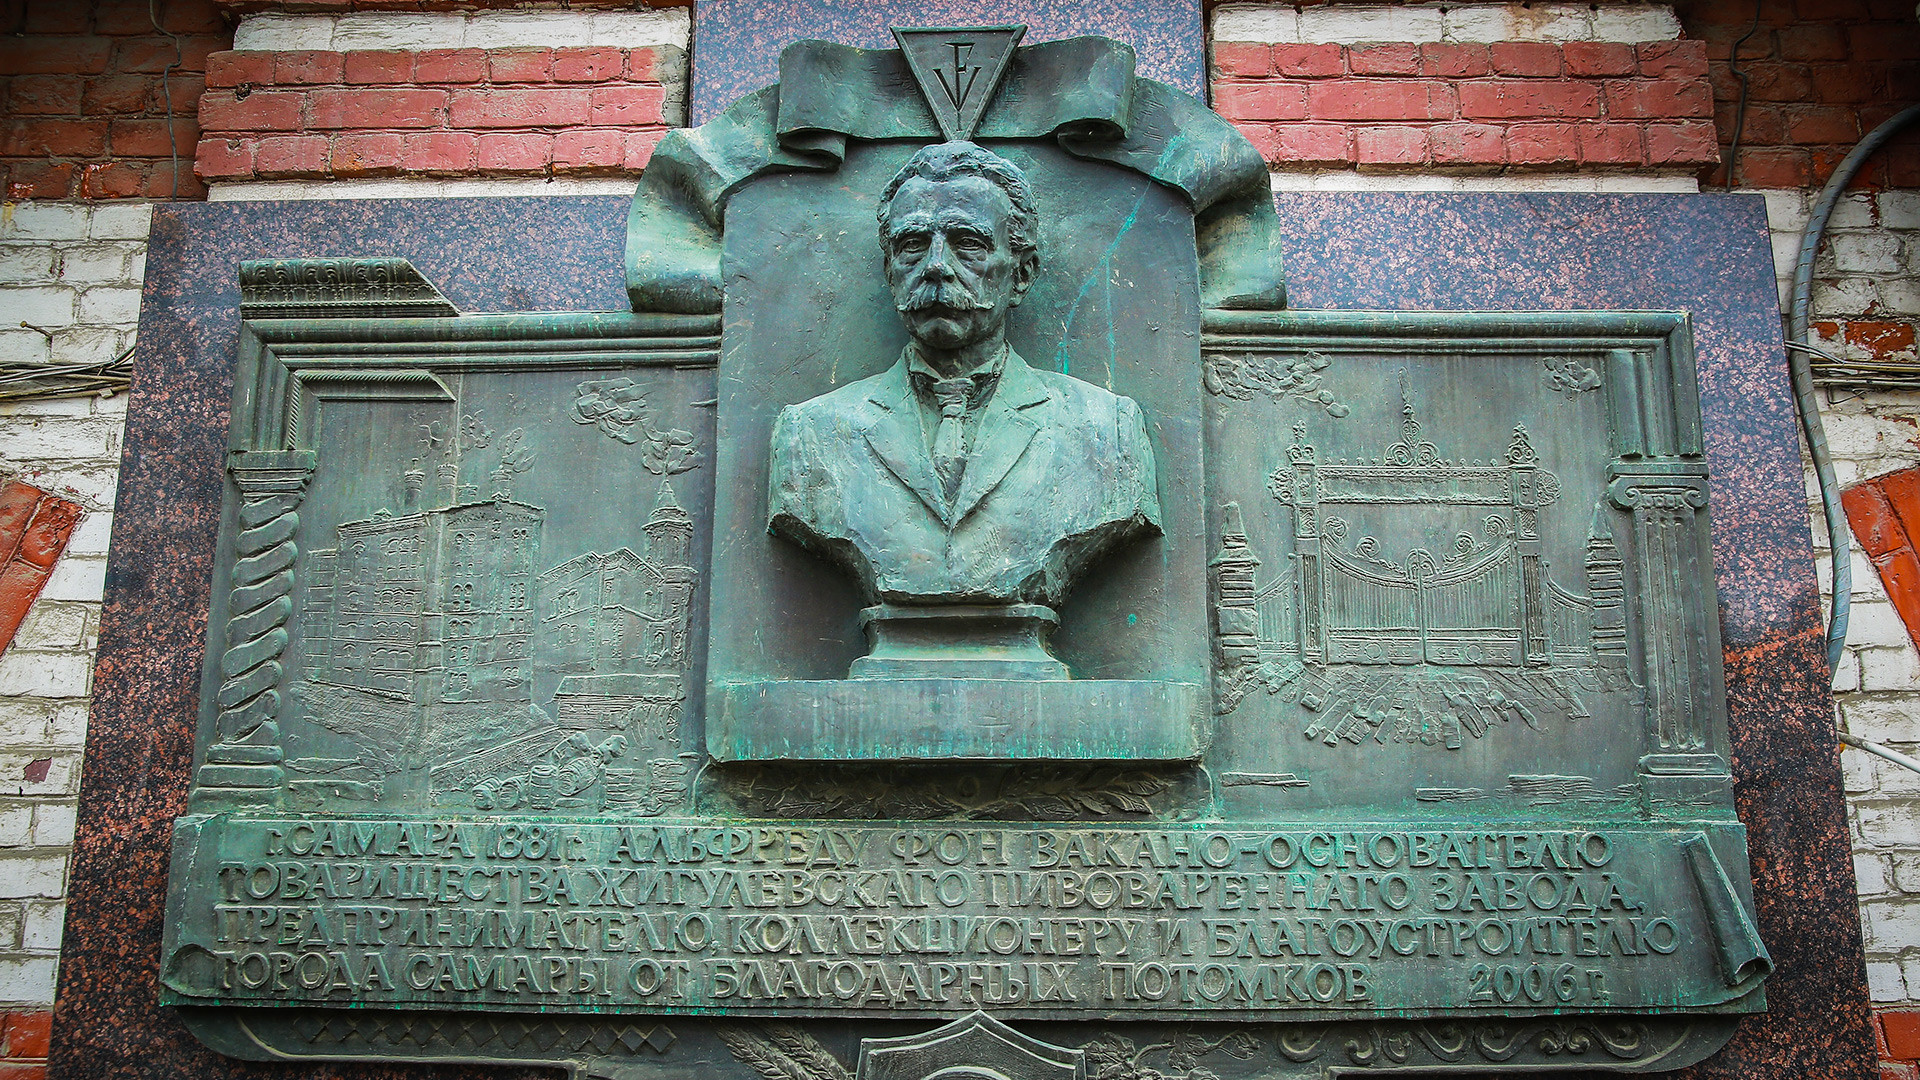 A memorial plaque to the founder of “Zhigulevskoye” beer brewery and Austrian nobleman Alfred von Vacano in Samara.